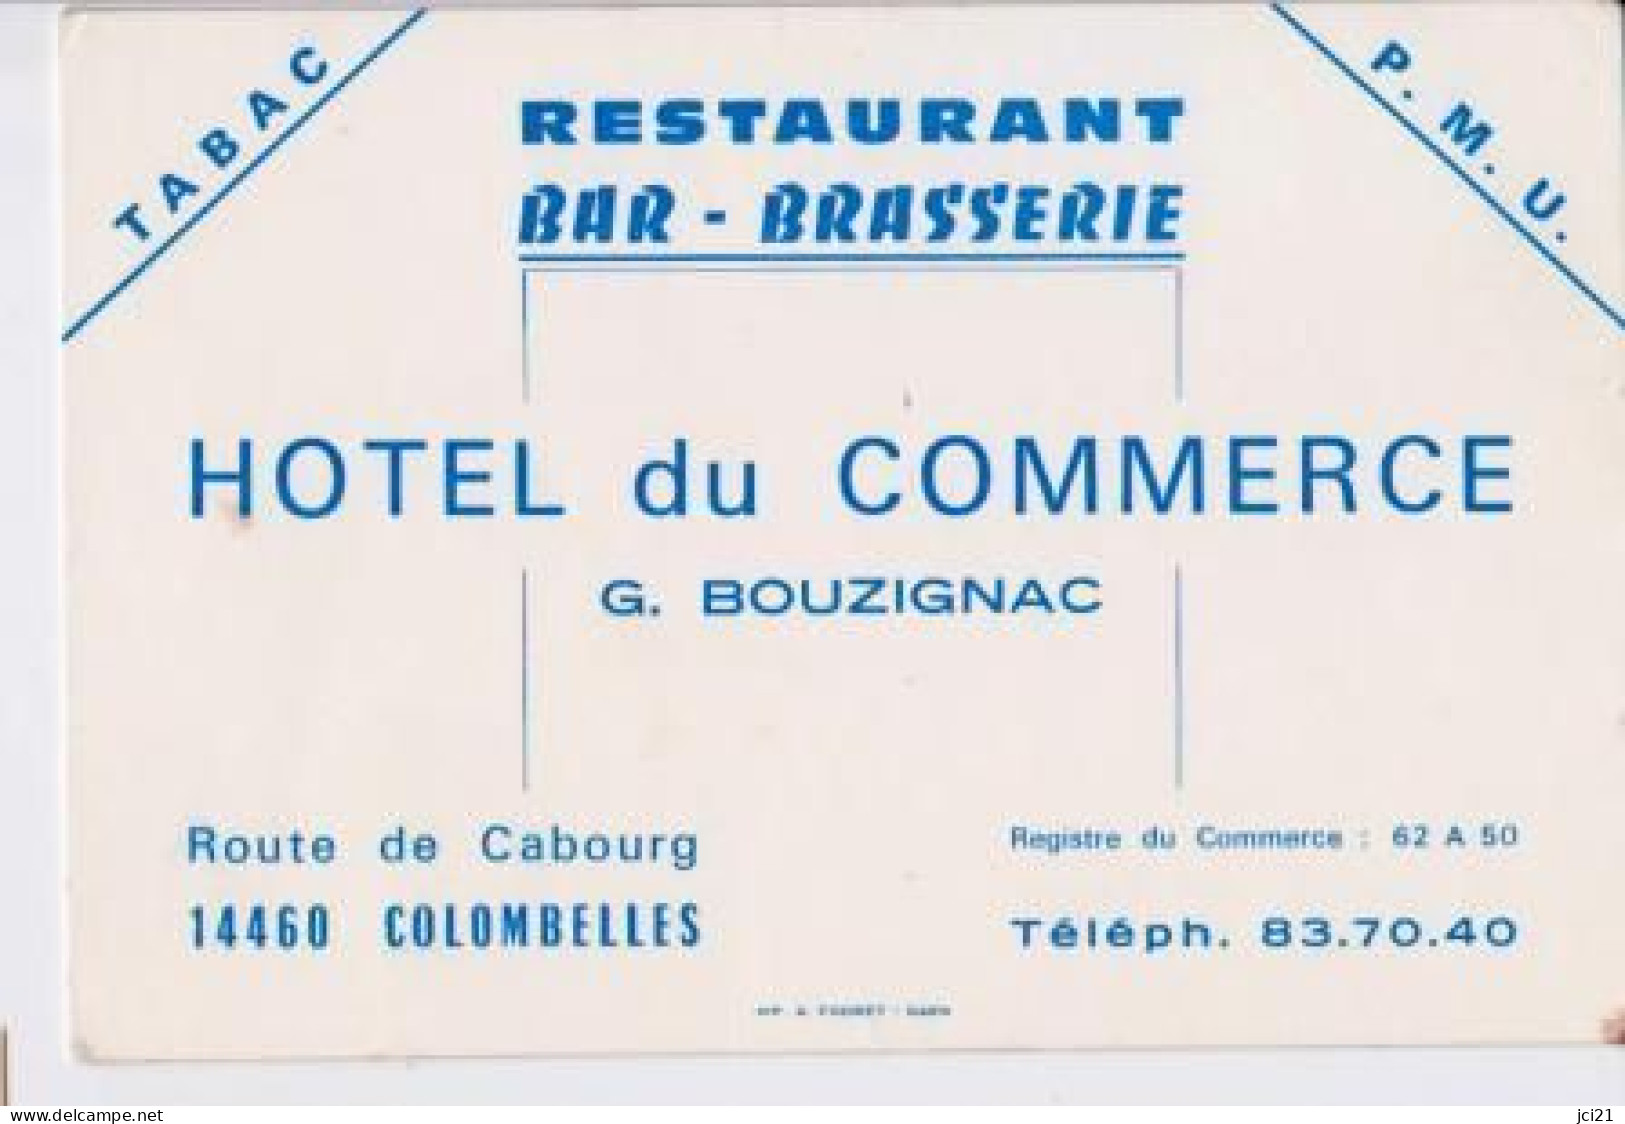 Restaurant Bar Brasserie Hôtel Du Commerce G.BOUZIGNAC 14460 COLOMBELLES _CV99 - Visitenkarten